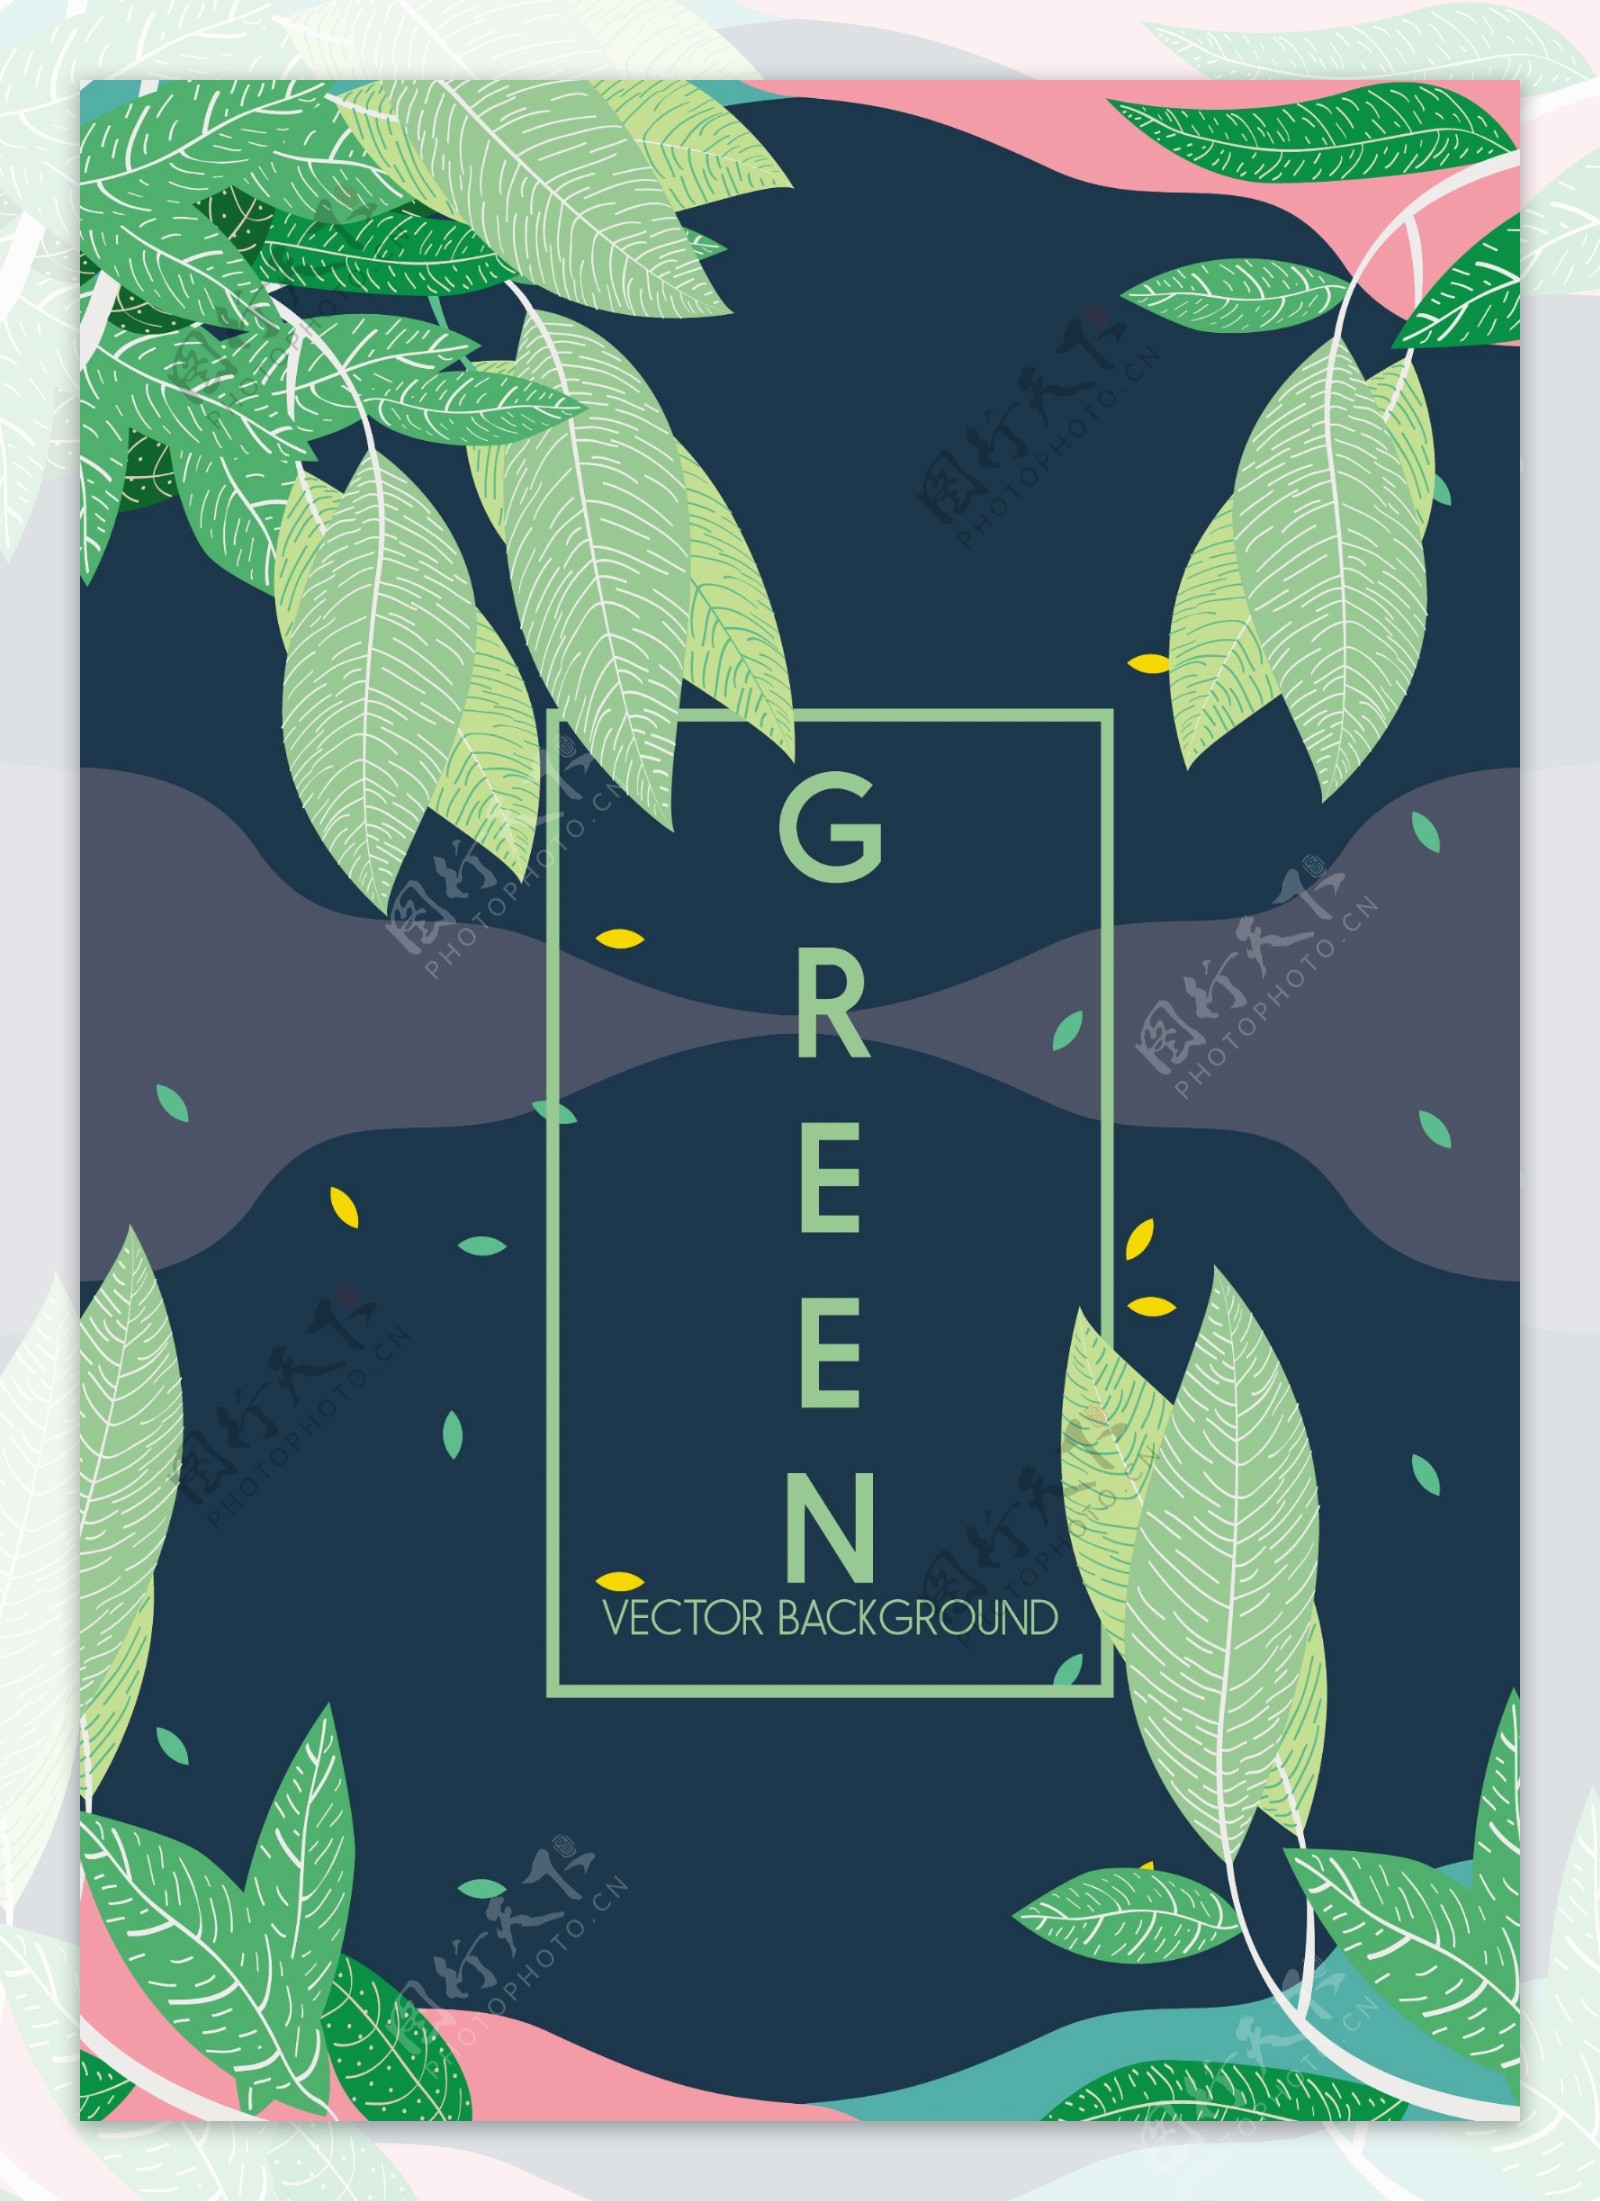 自然绿色环保叶子矢量素材下载